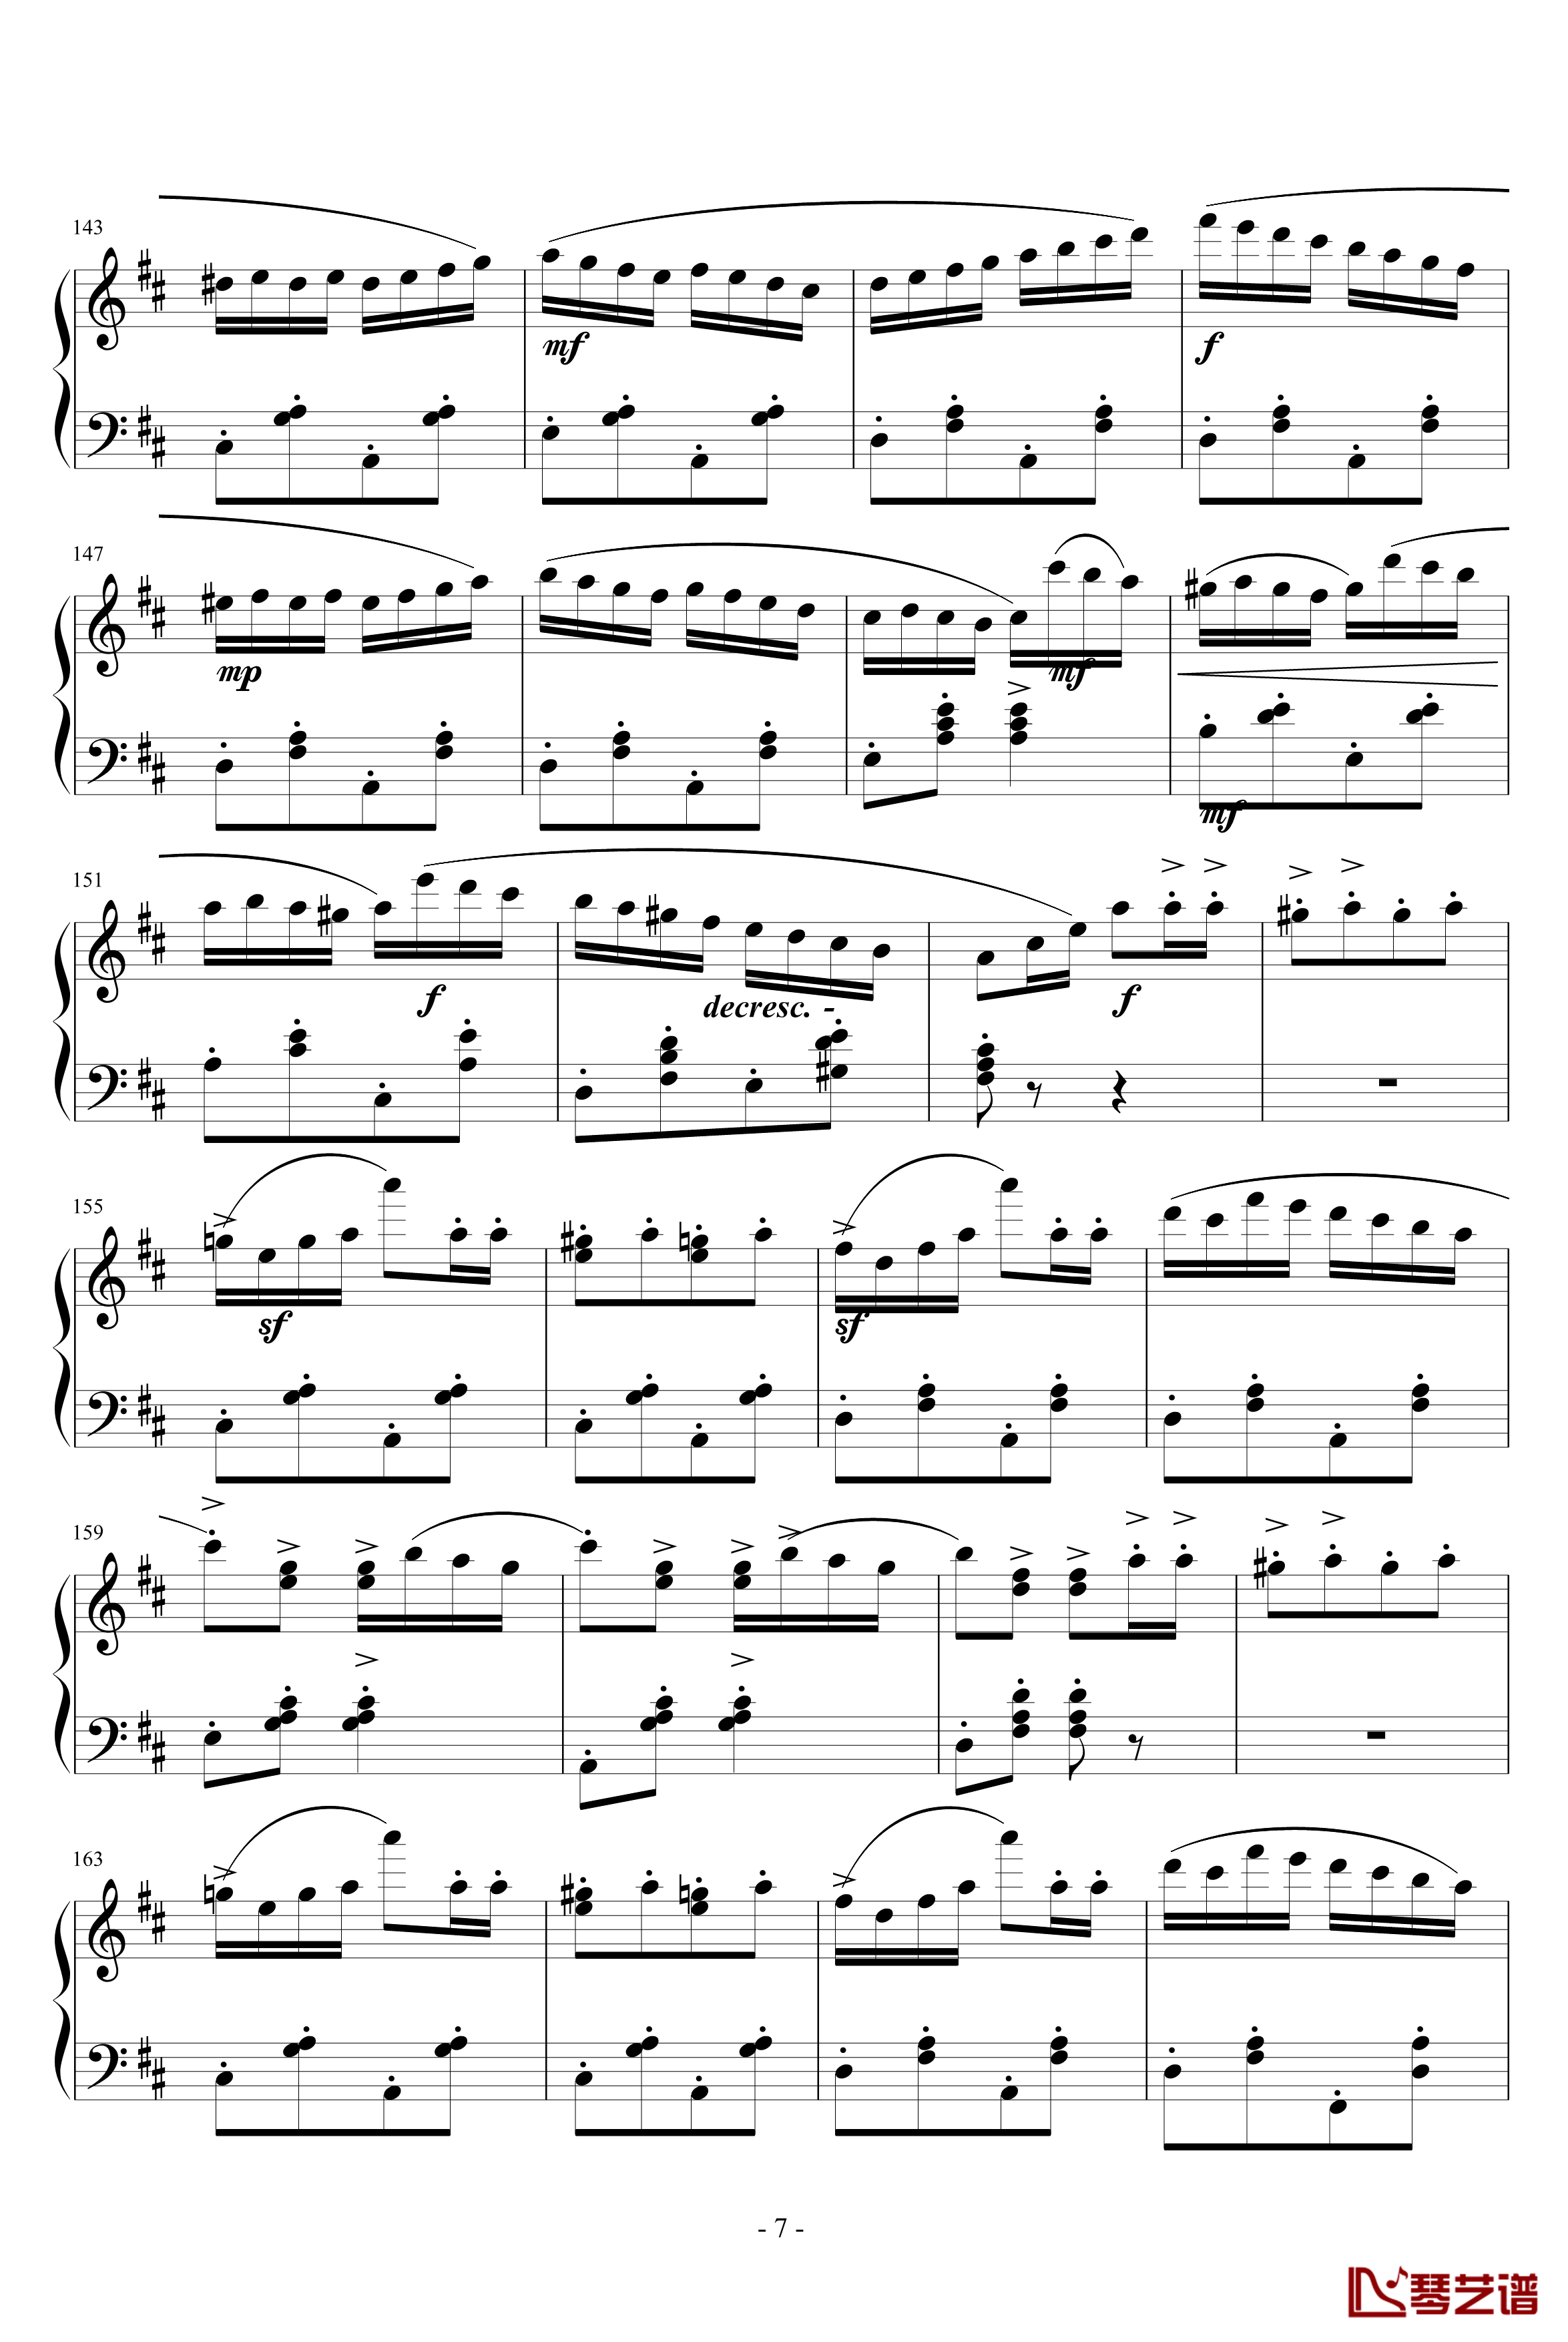 意大利波尔卡钢琴谱-拉赫马尼若夫7